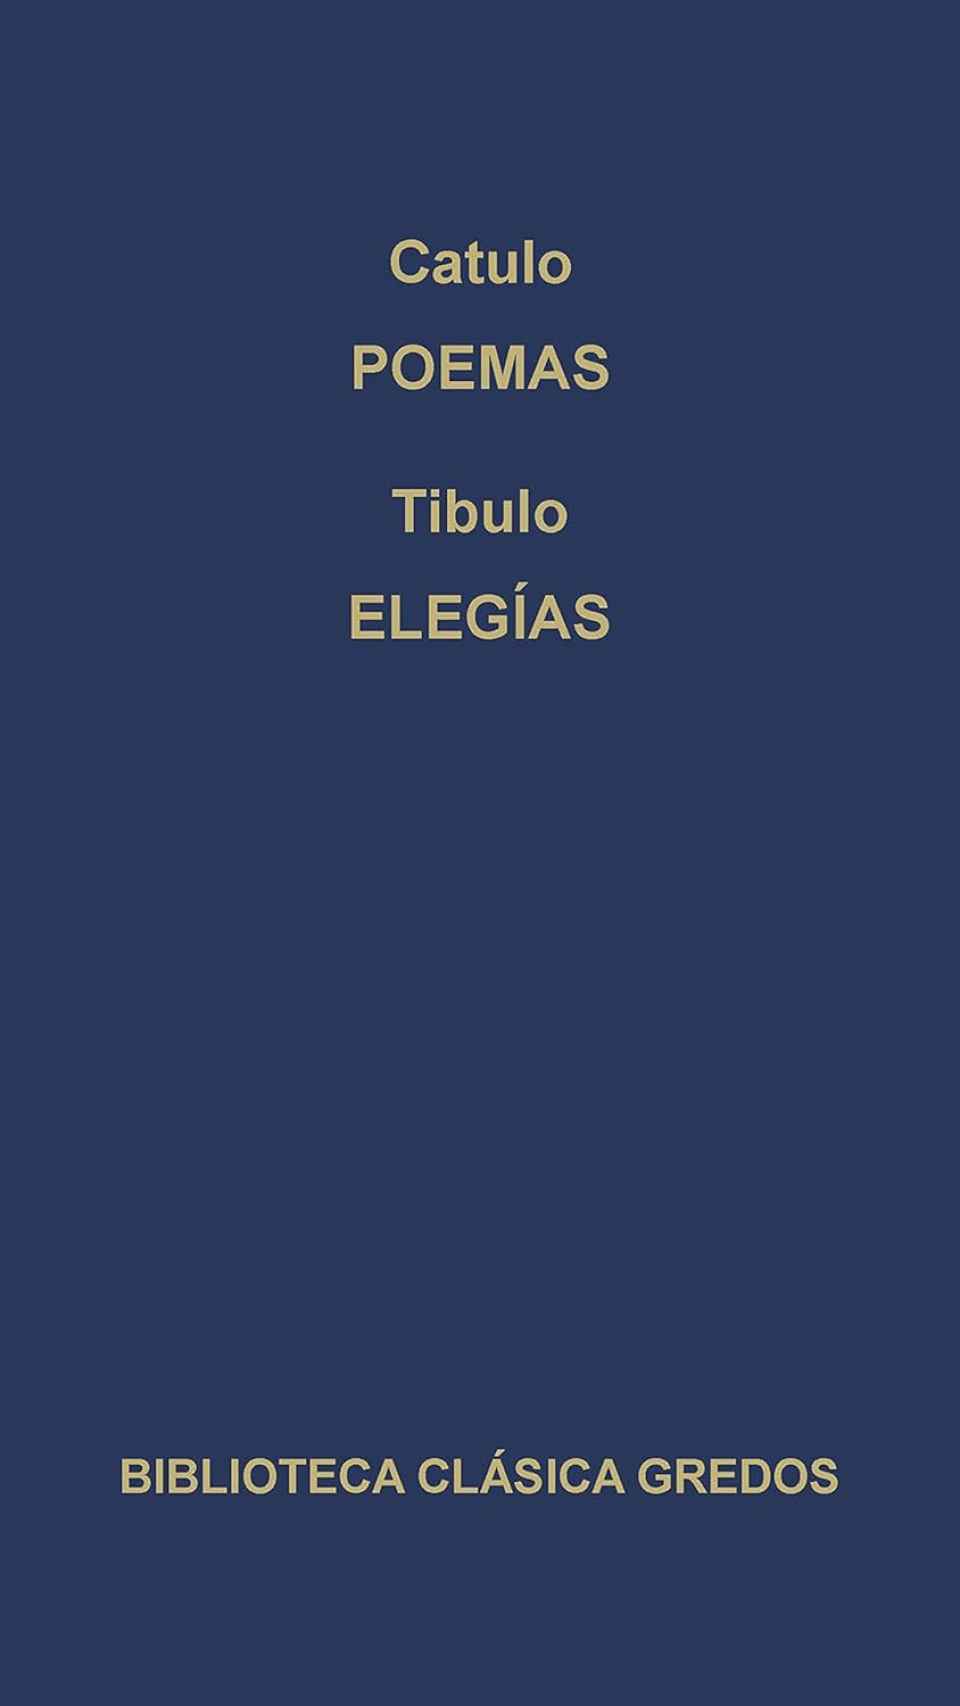 Volumen dedicado a Catulo y Tibulo